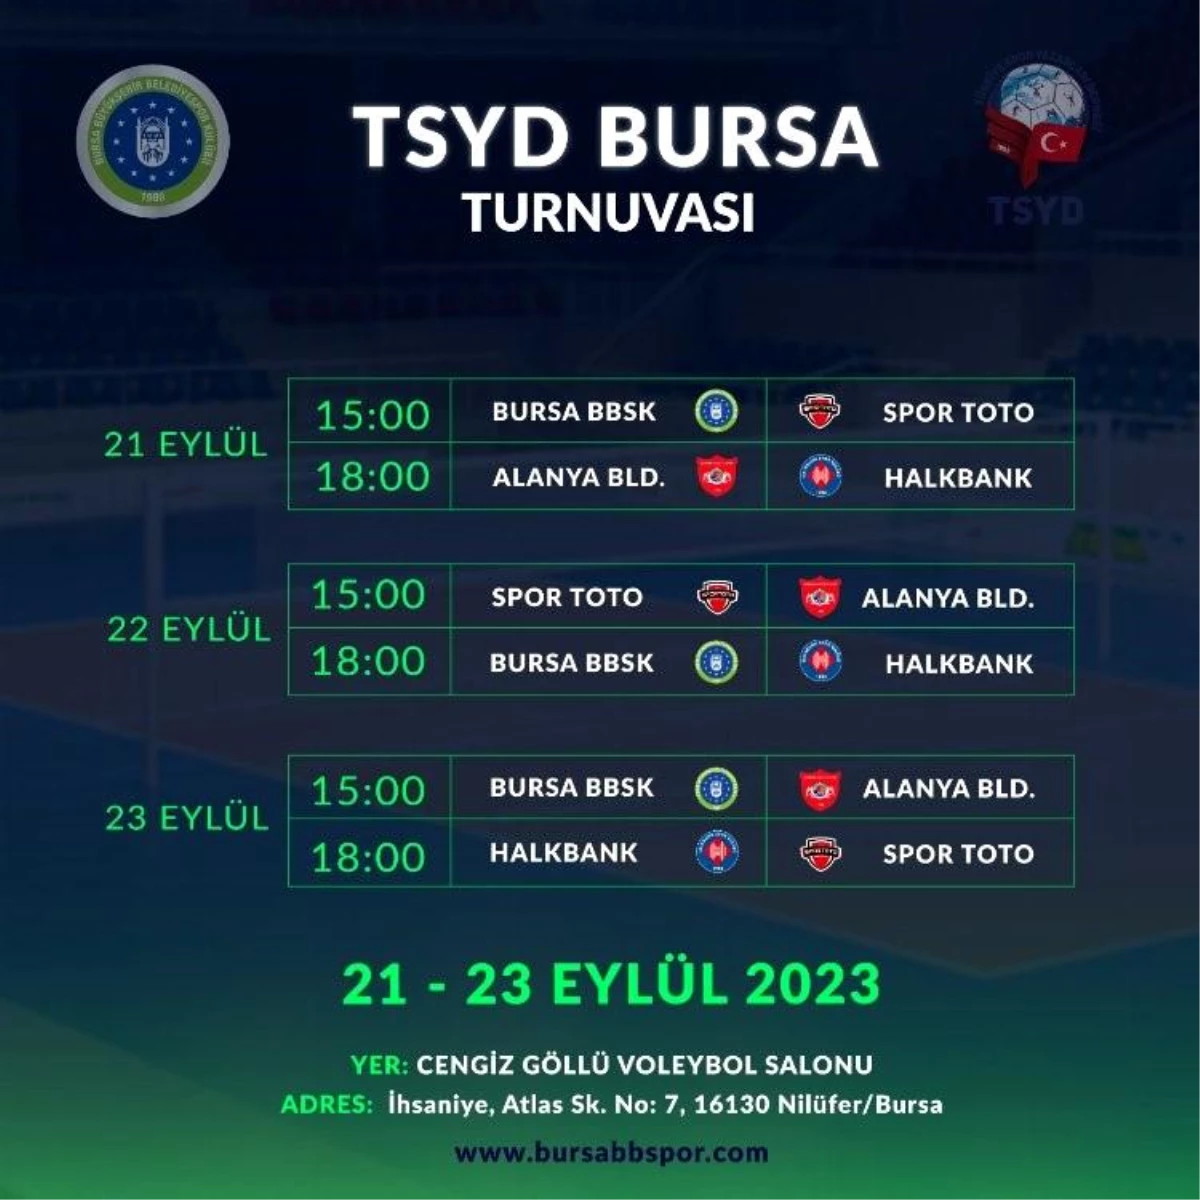 TSYD Bursa Voleybol Turnuvası 21-23 Eylül 2023 Tarihleri Arasında Yapılacak